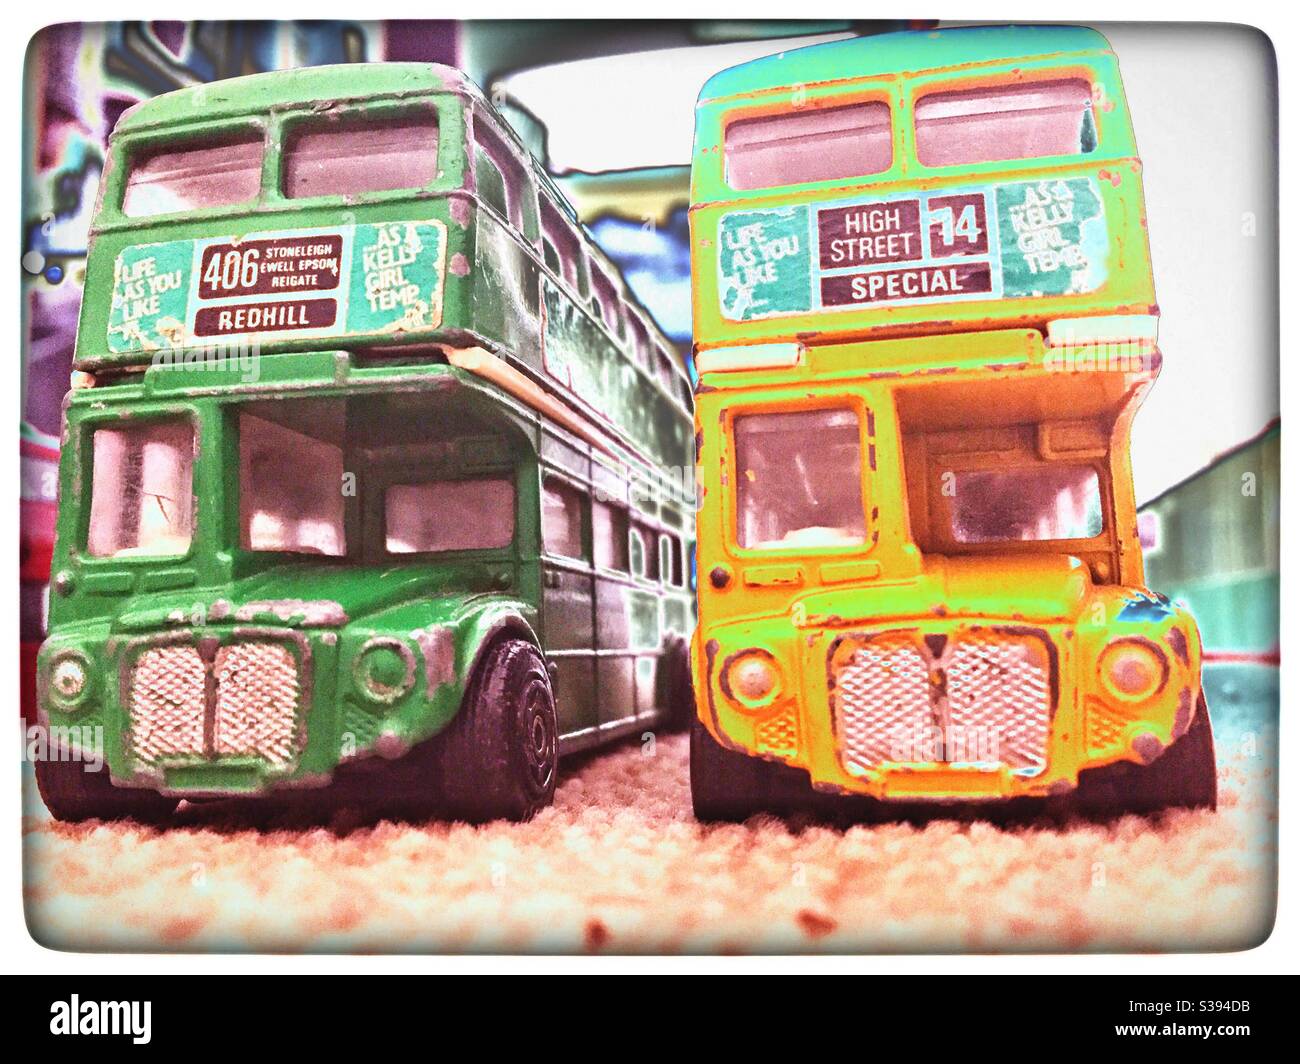 Vintage toy corgi buses Stock Photo